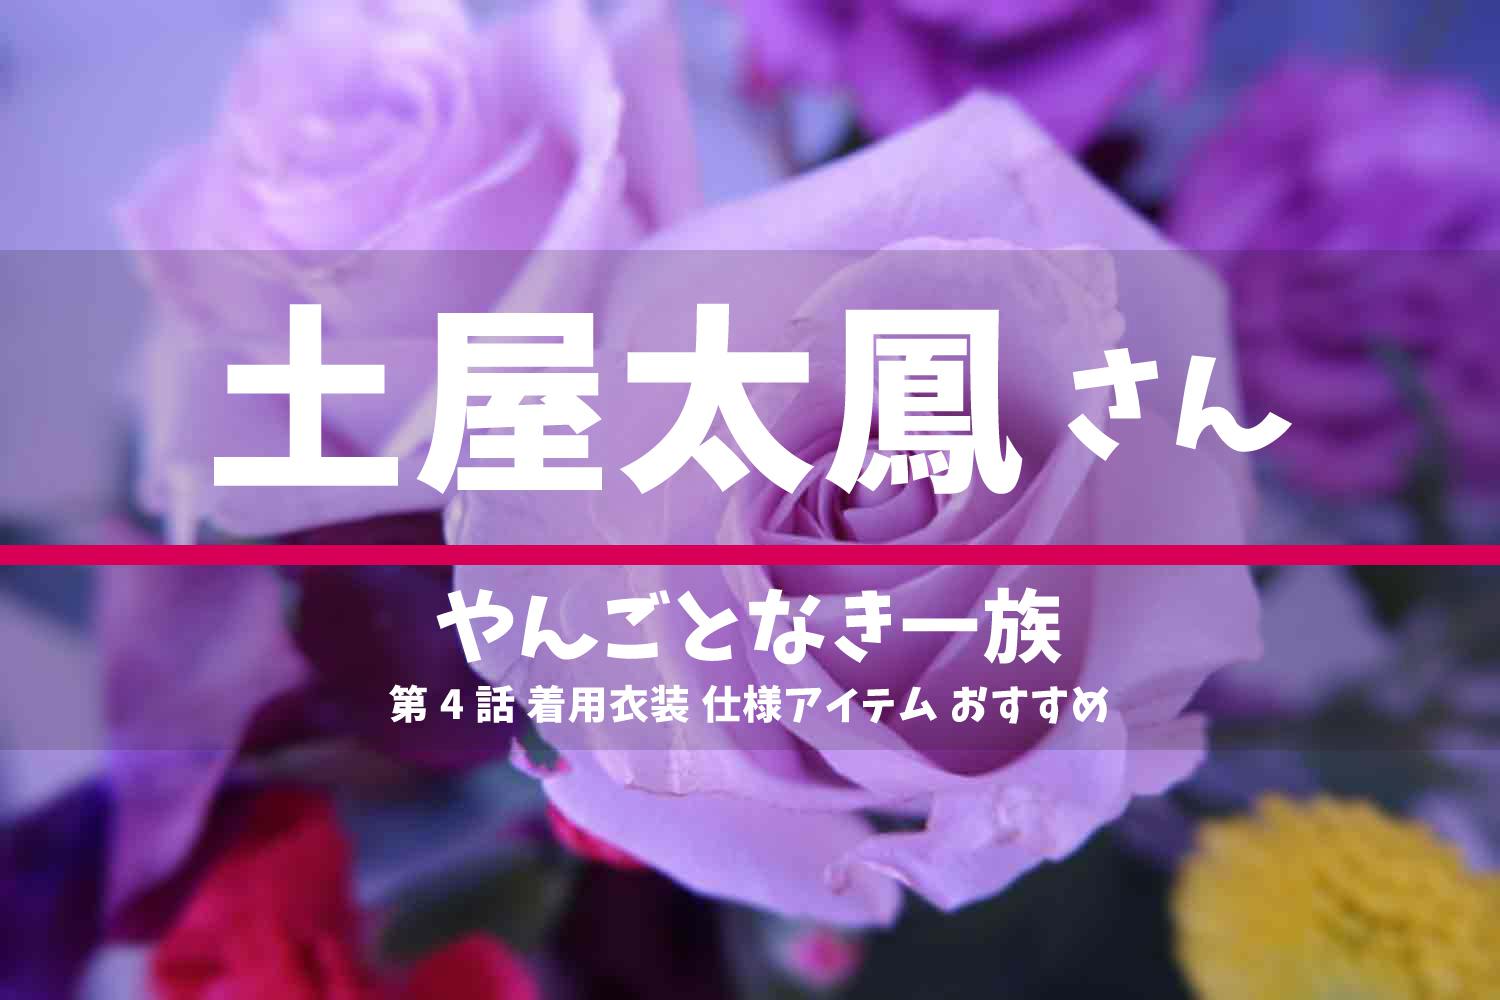 やんごとなき一族 土屋太鳳さん ドラマ 衣装 2022年5月12日放送